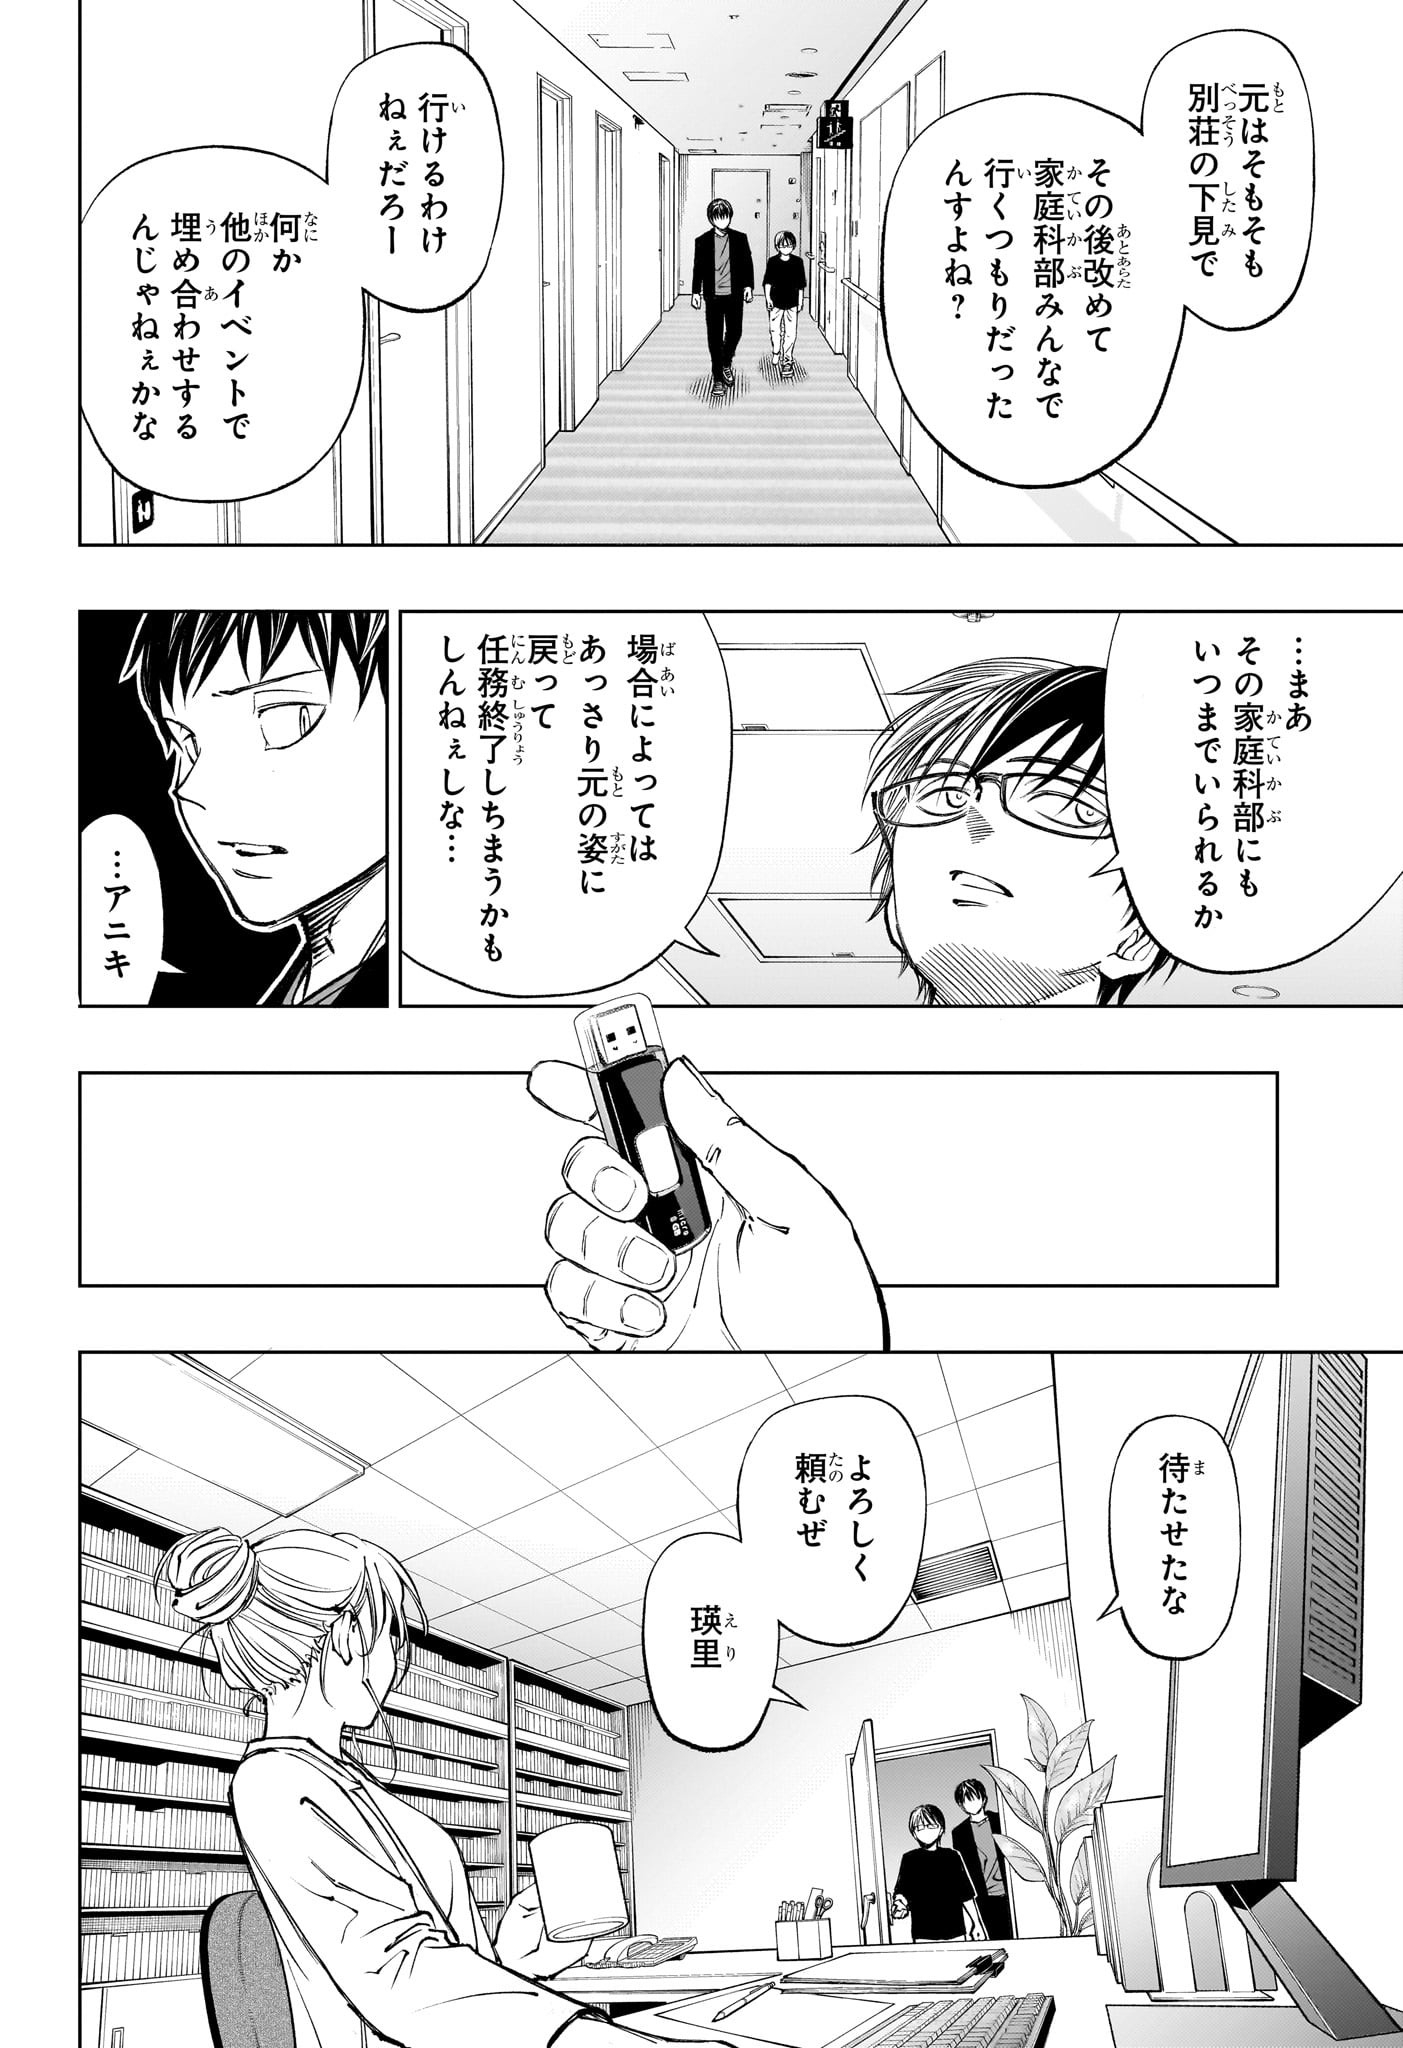 Kill Ao - Chapter 61 - Page 2